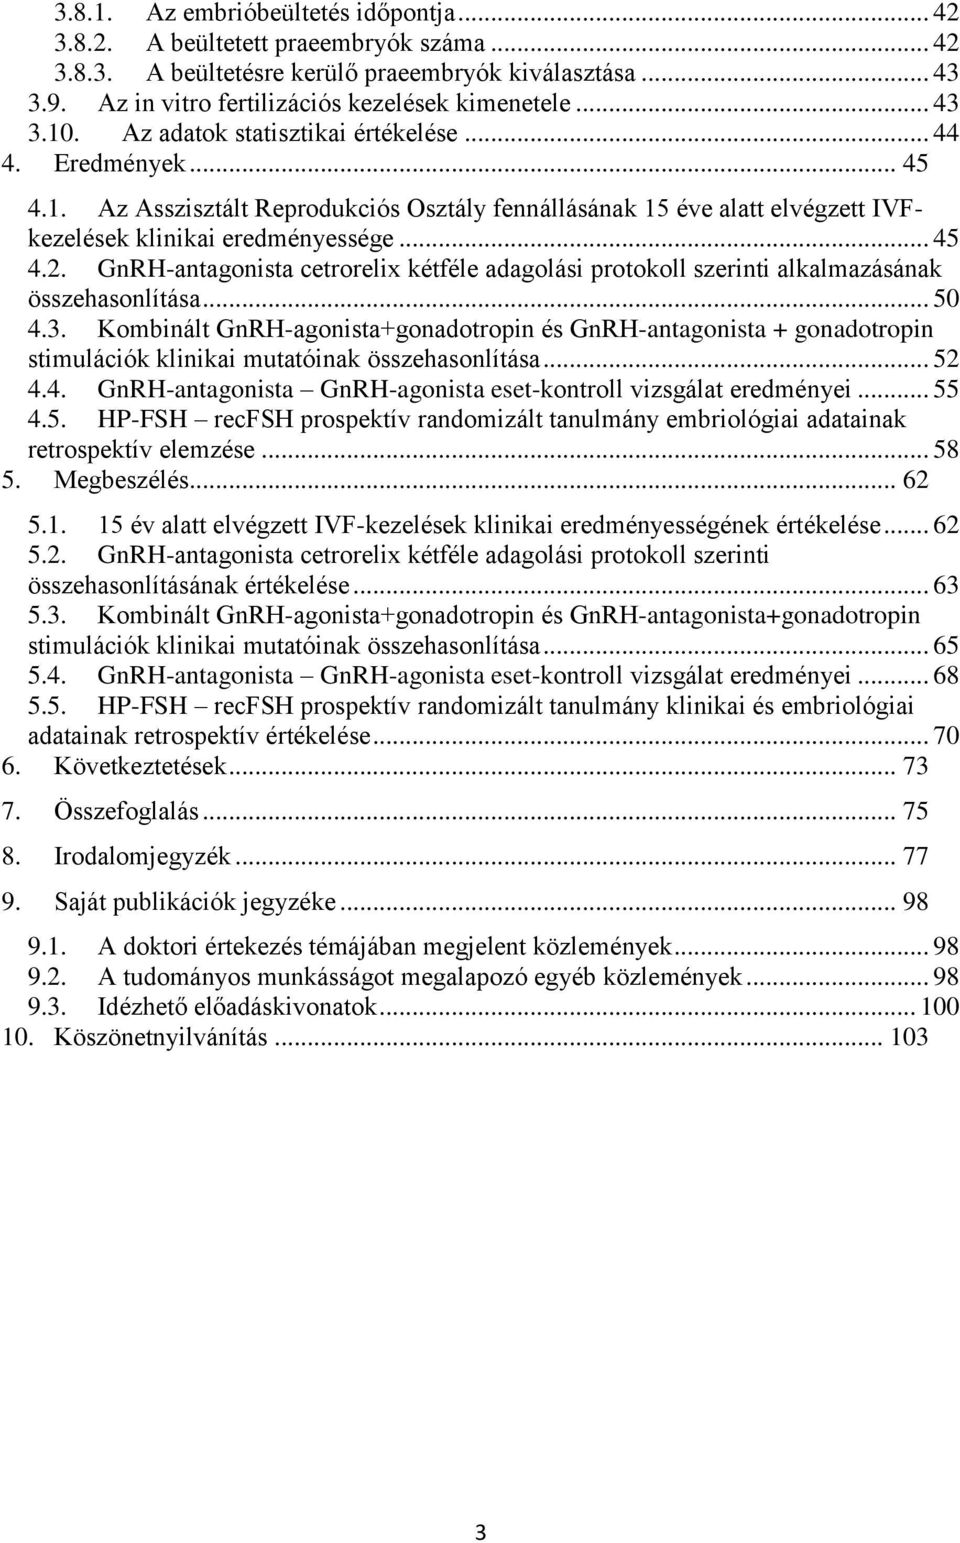 GnRH-antagonista cetrorelix kétféle adagolási protokoll szerinti alkalmazásának összehasonlítása... 50 4.3.